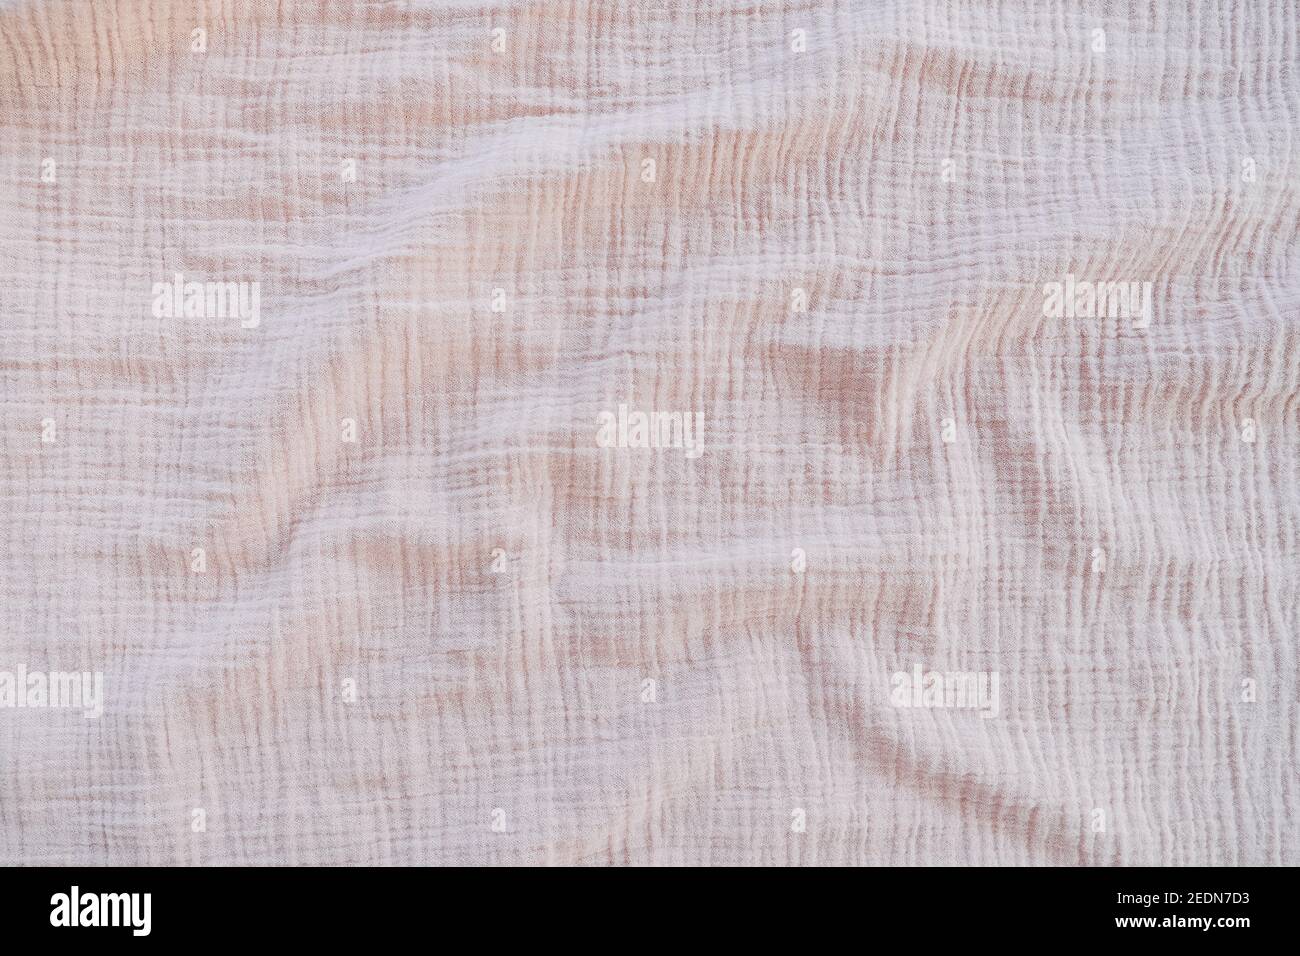 Musselin Stoff Textur Hintergrund in neutralen Tönen. Musselin-Baumwollgewebe aus Leinwandbindung. Musselin ist ein weiches, gewebtes, zu 100 Prozent aus Baumwolle gestrickt mehrlagiges Tuch Stockfoto